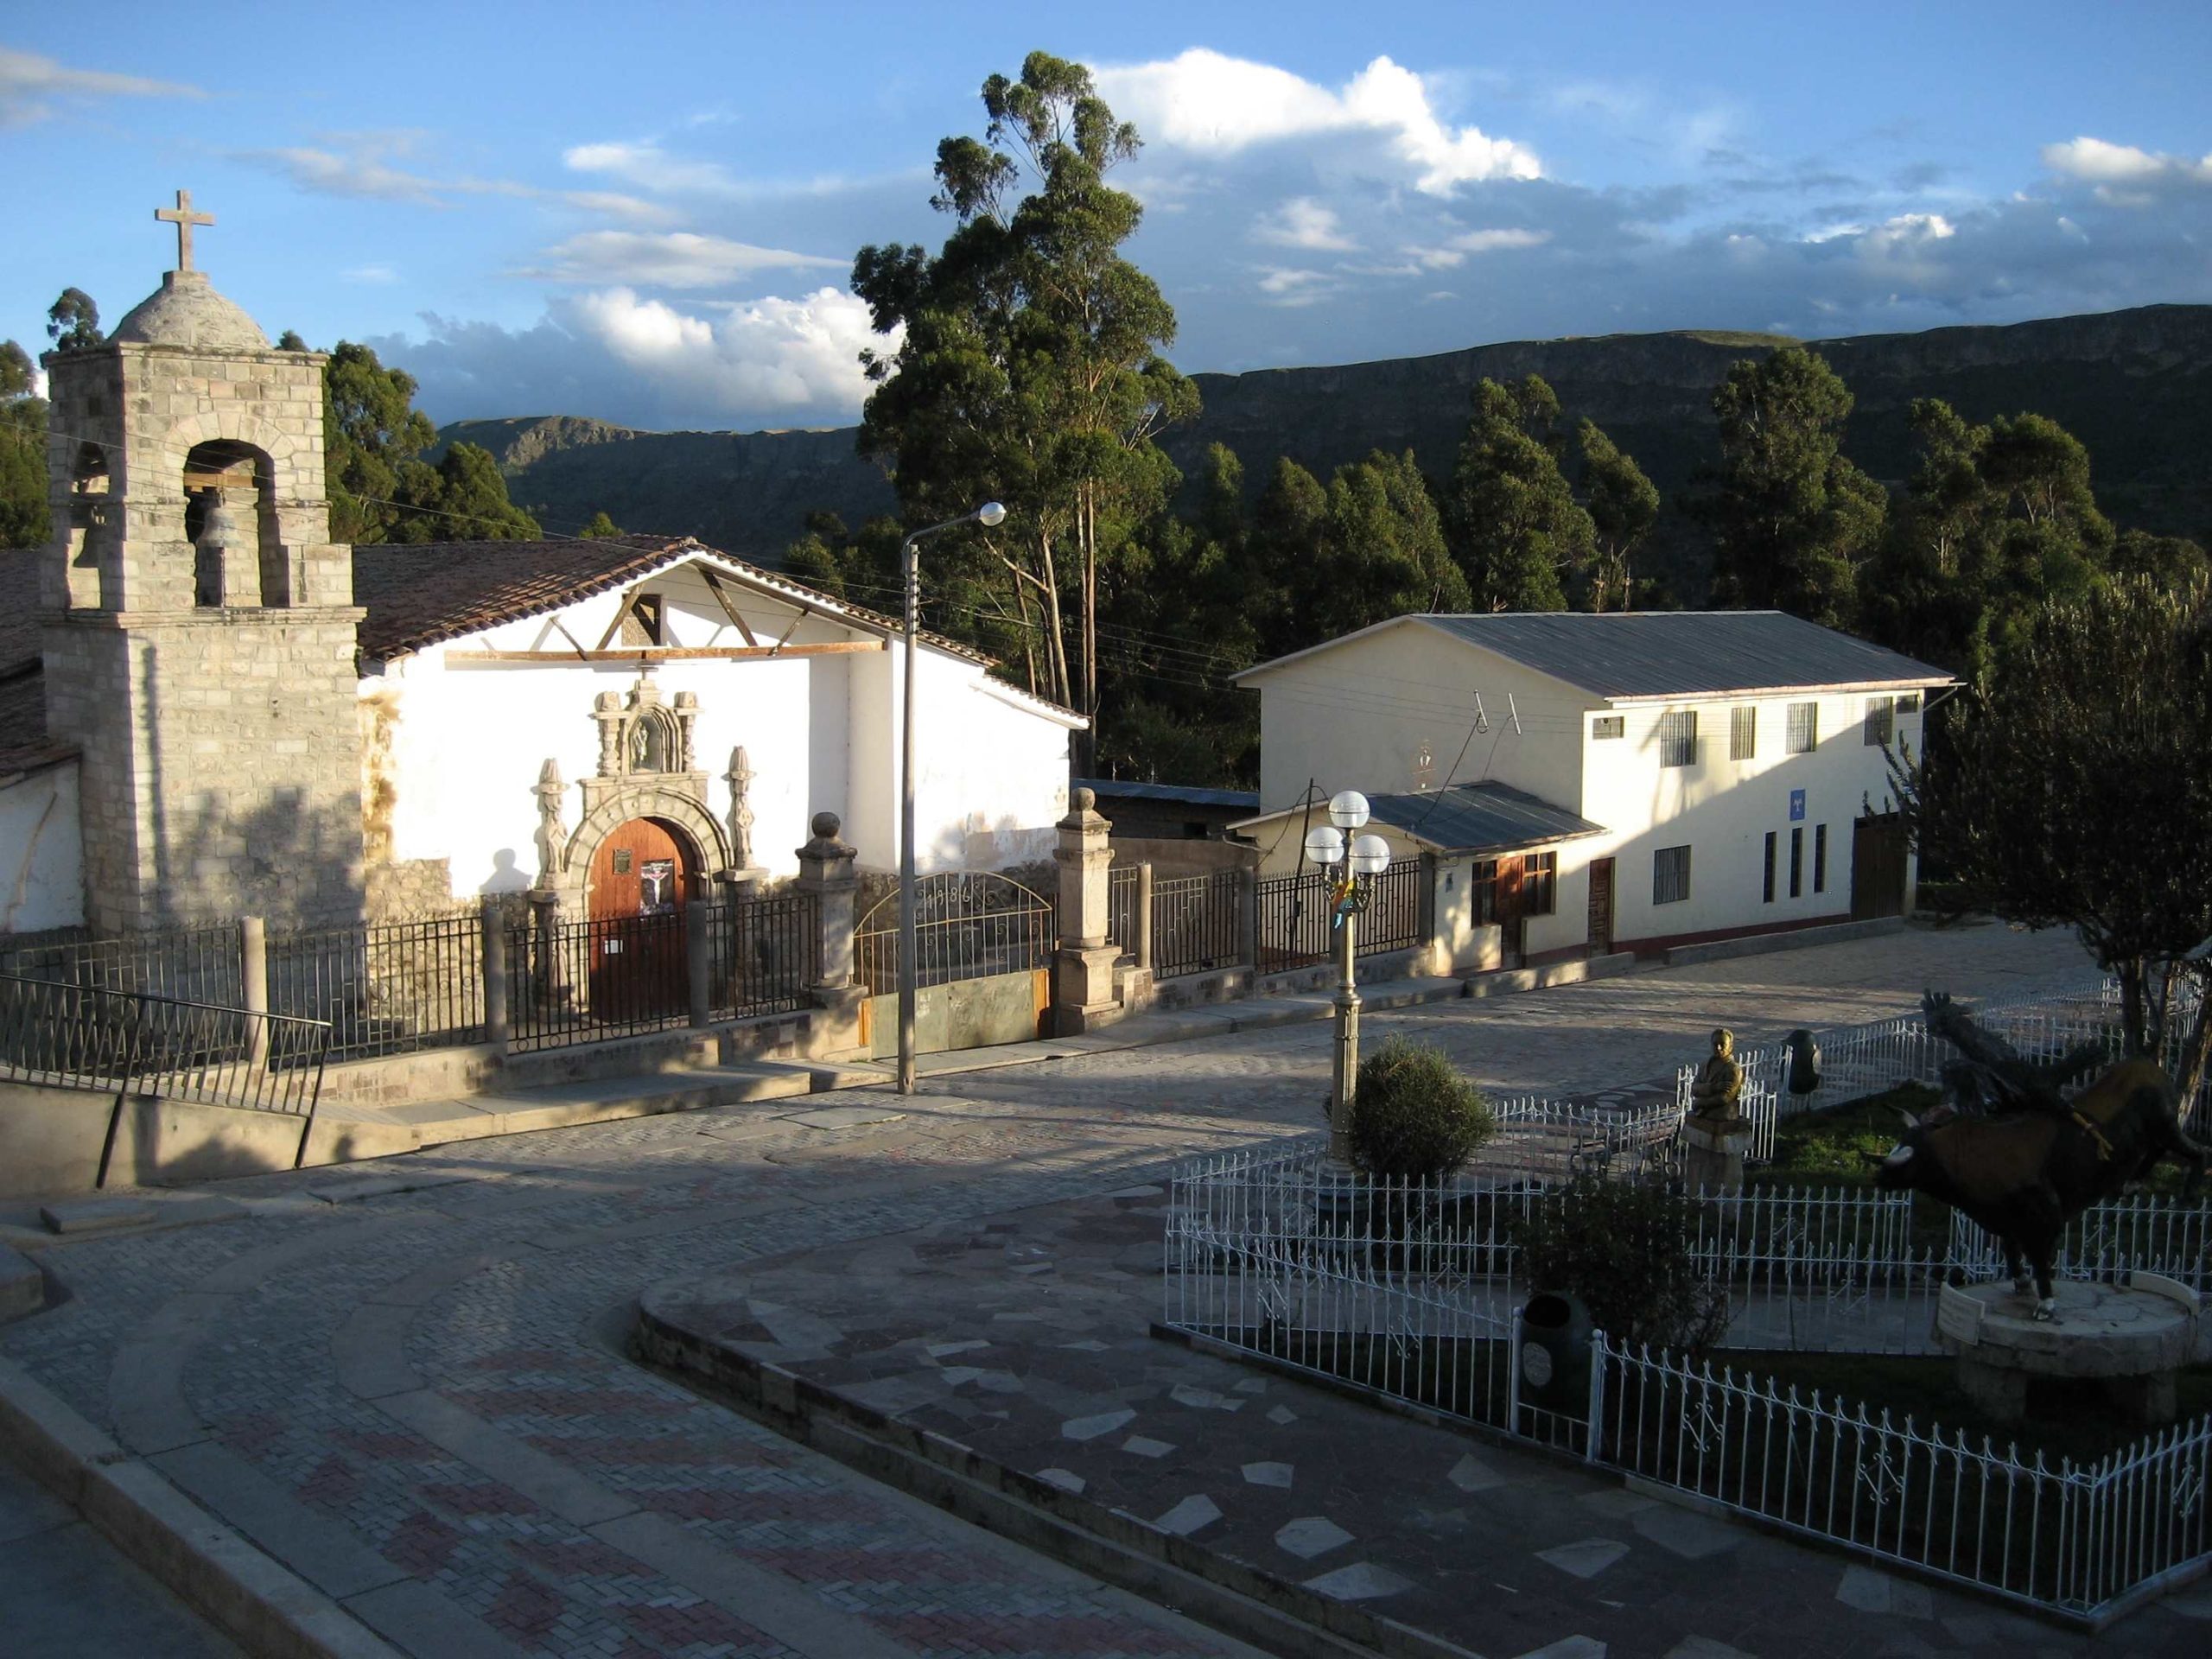 Pampachiri church plaza